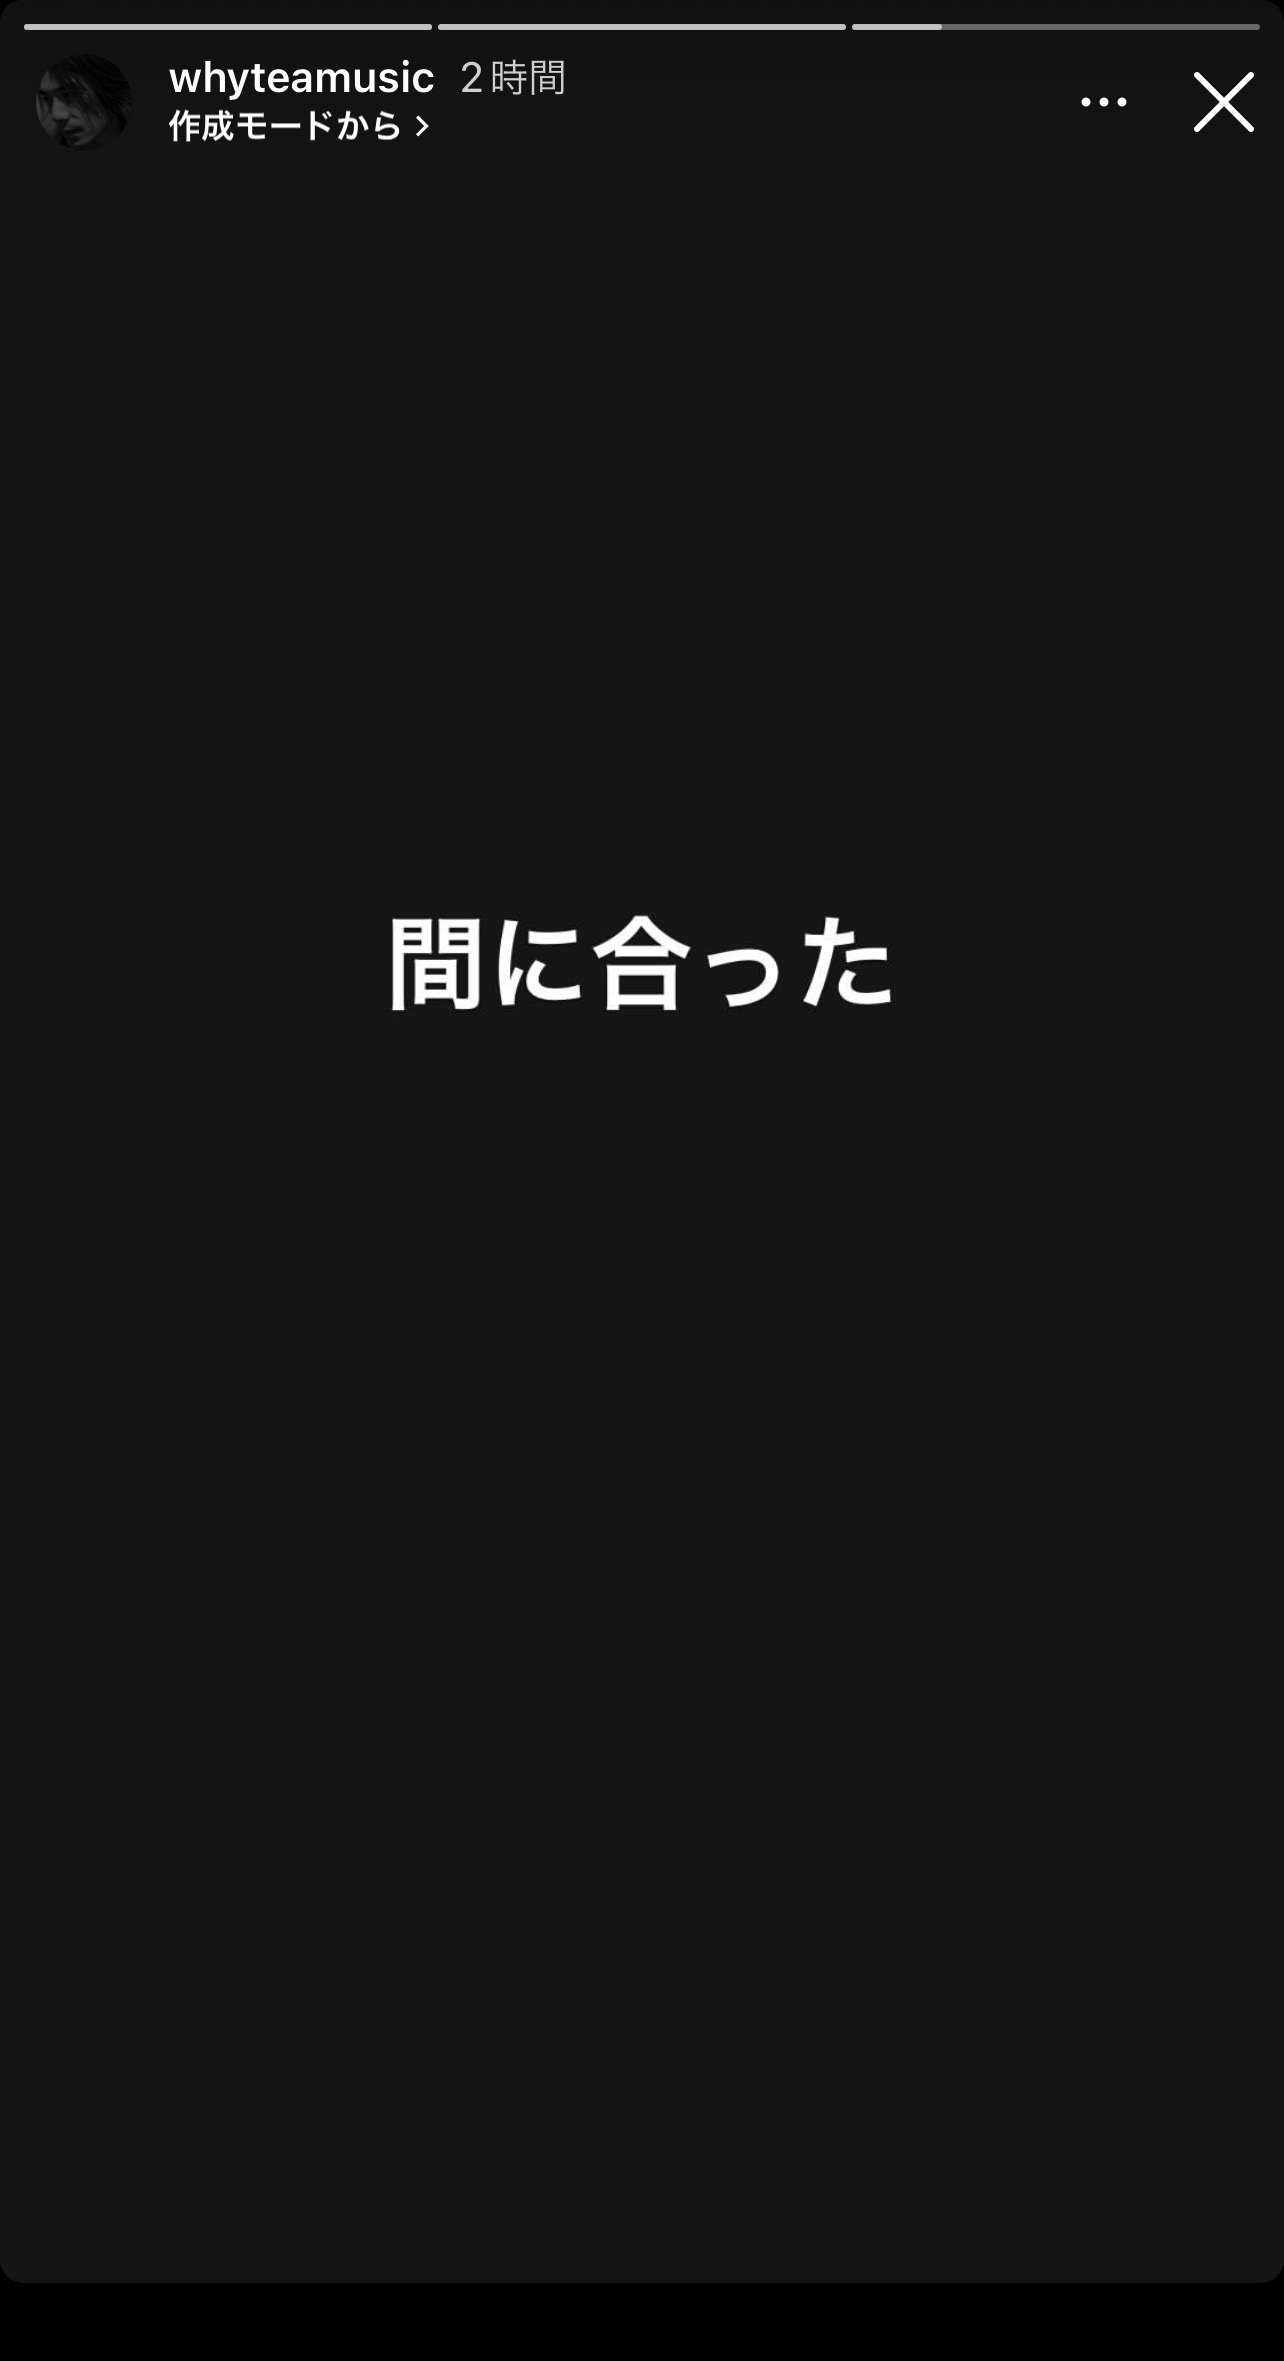 Yukihide "YT" Takiyamaが『推しといつまでも』を視聴したことを示唆したInstagramの投稿